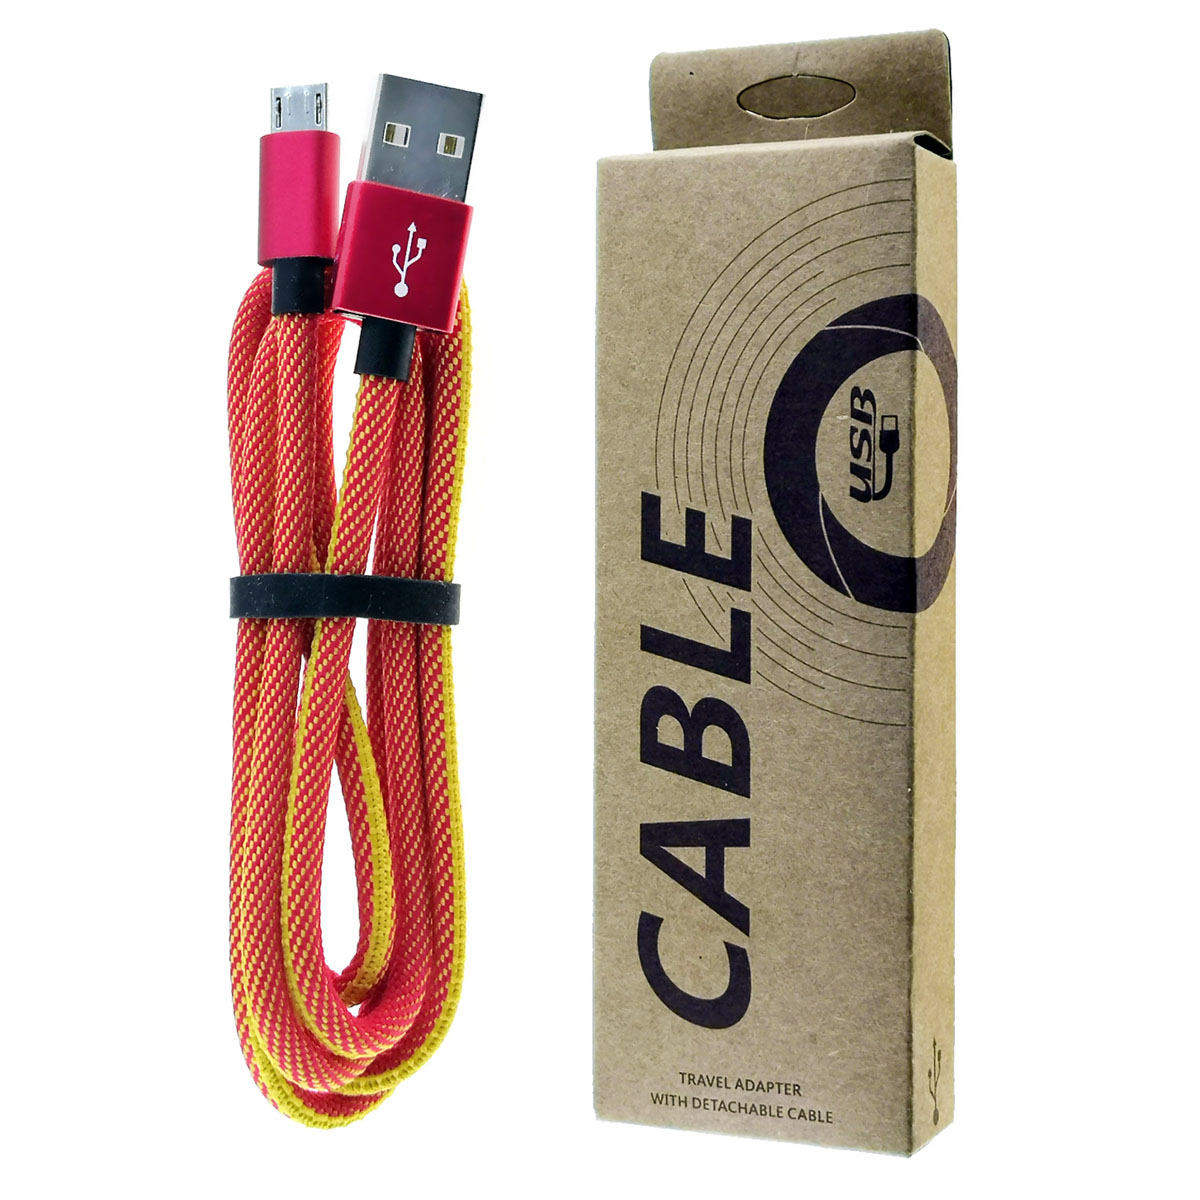 USB Дата-кабель Micro USB, длина 1 метр, тканевое армирование, цвет красный.